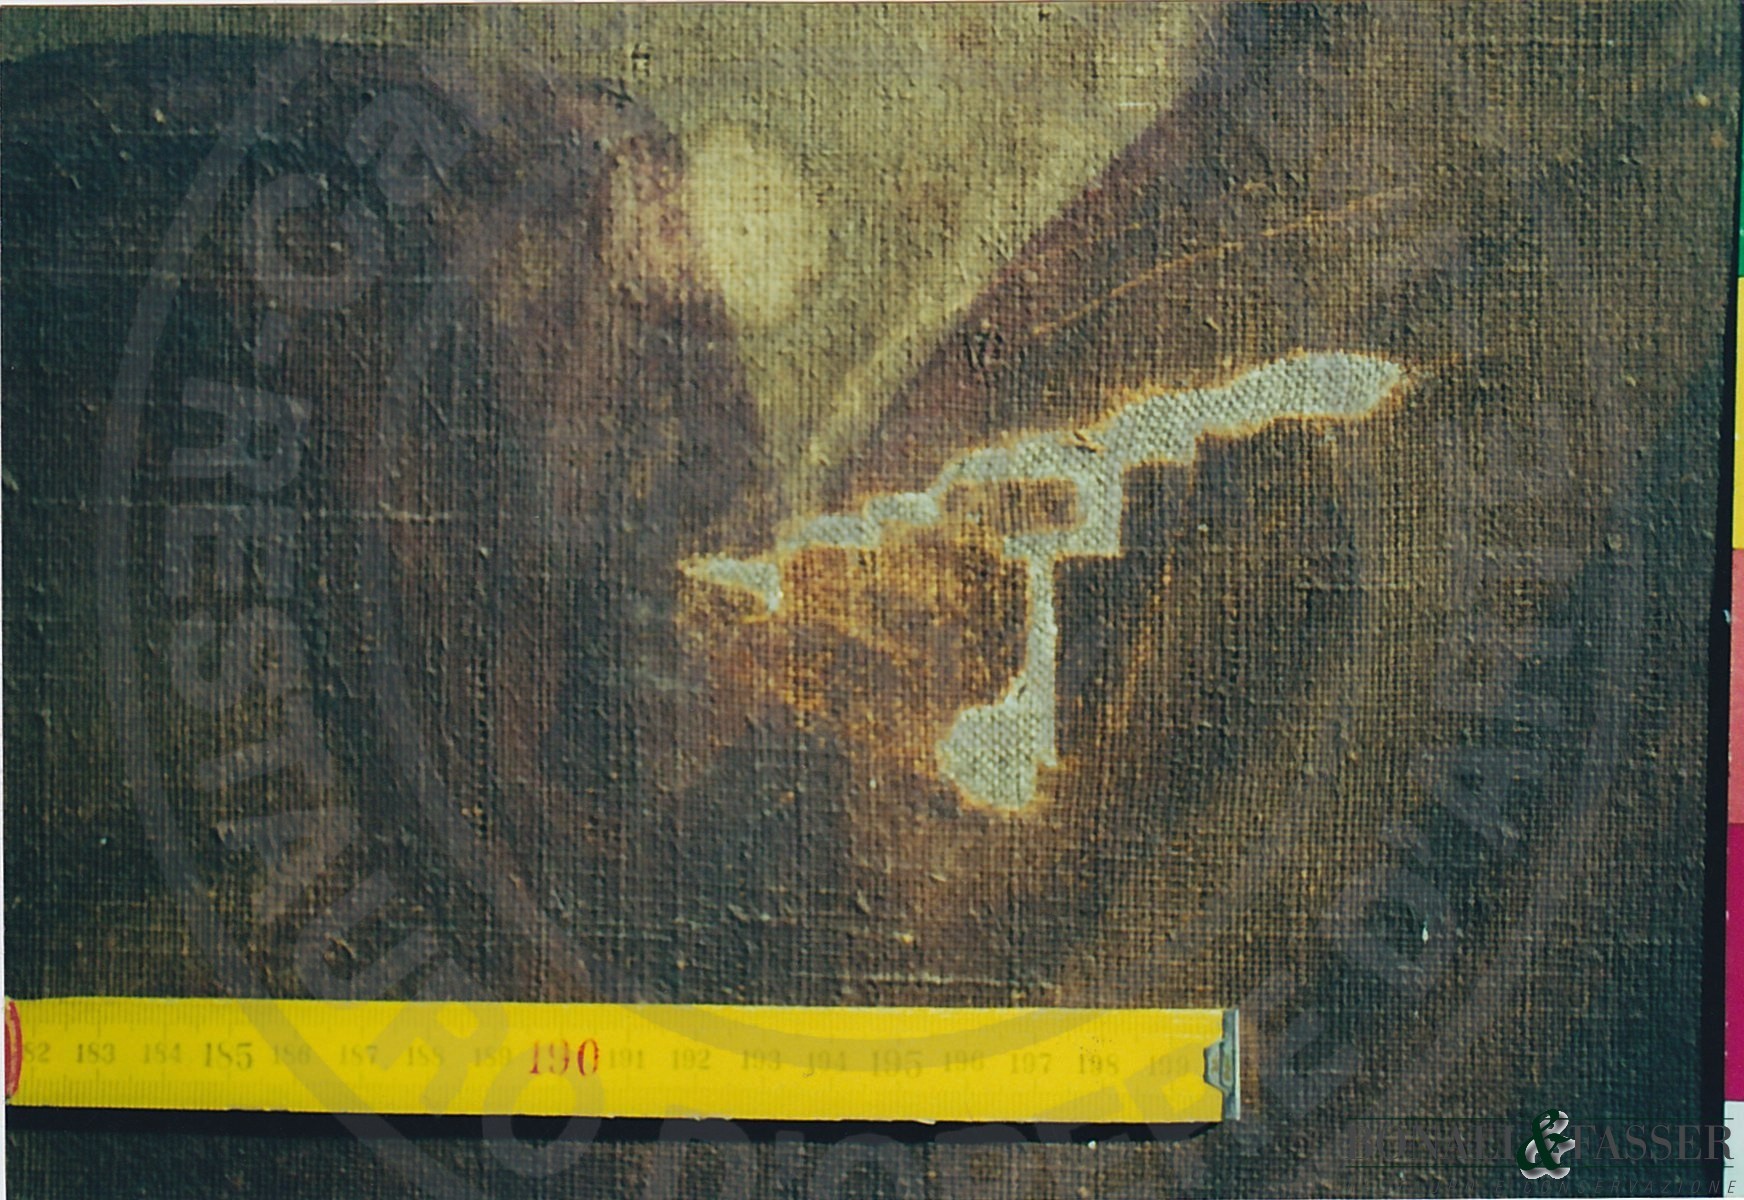 Dettaglio del recto in corrispondenza della veste dell'angelo dove è stata realizzata la reintegrazione del supporto tramite inserto di tela